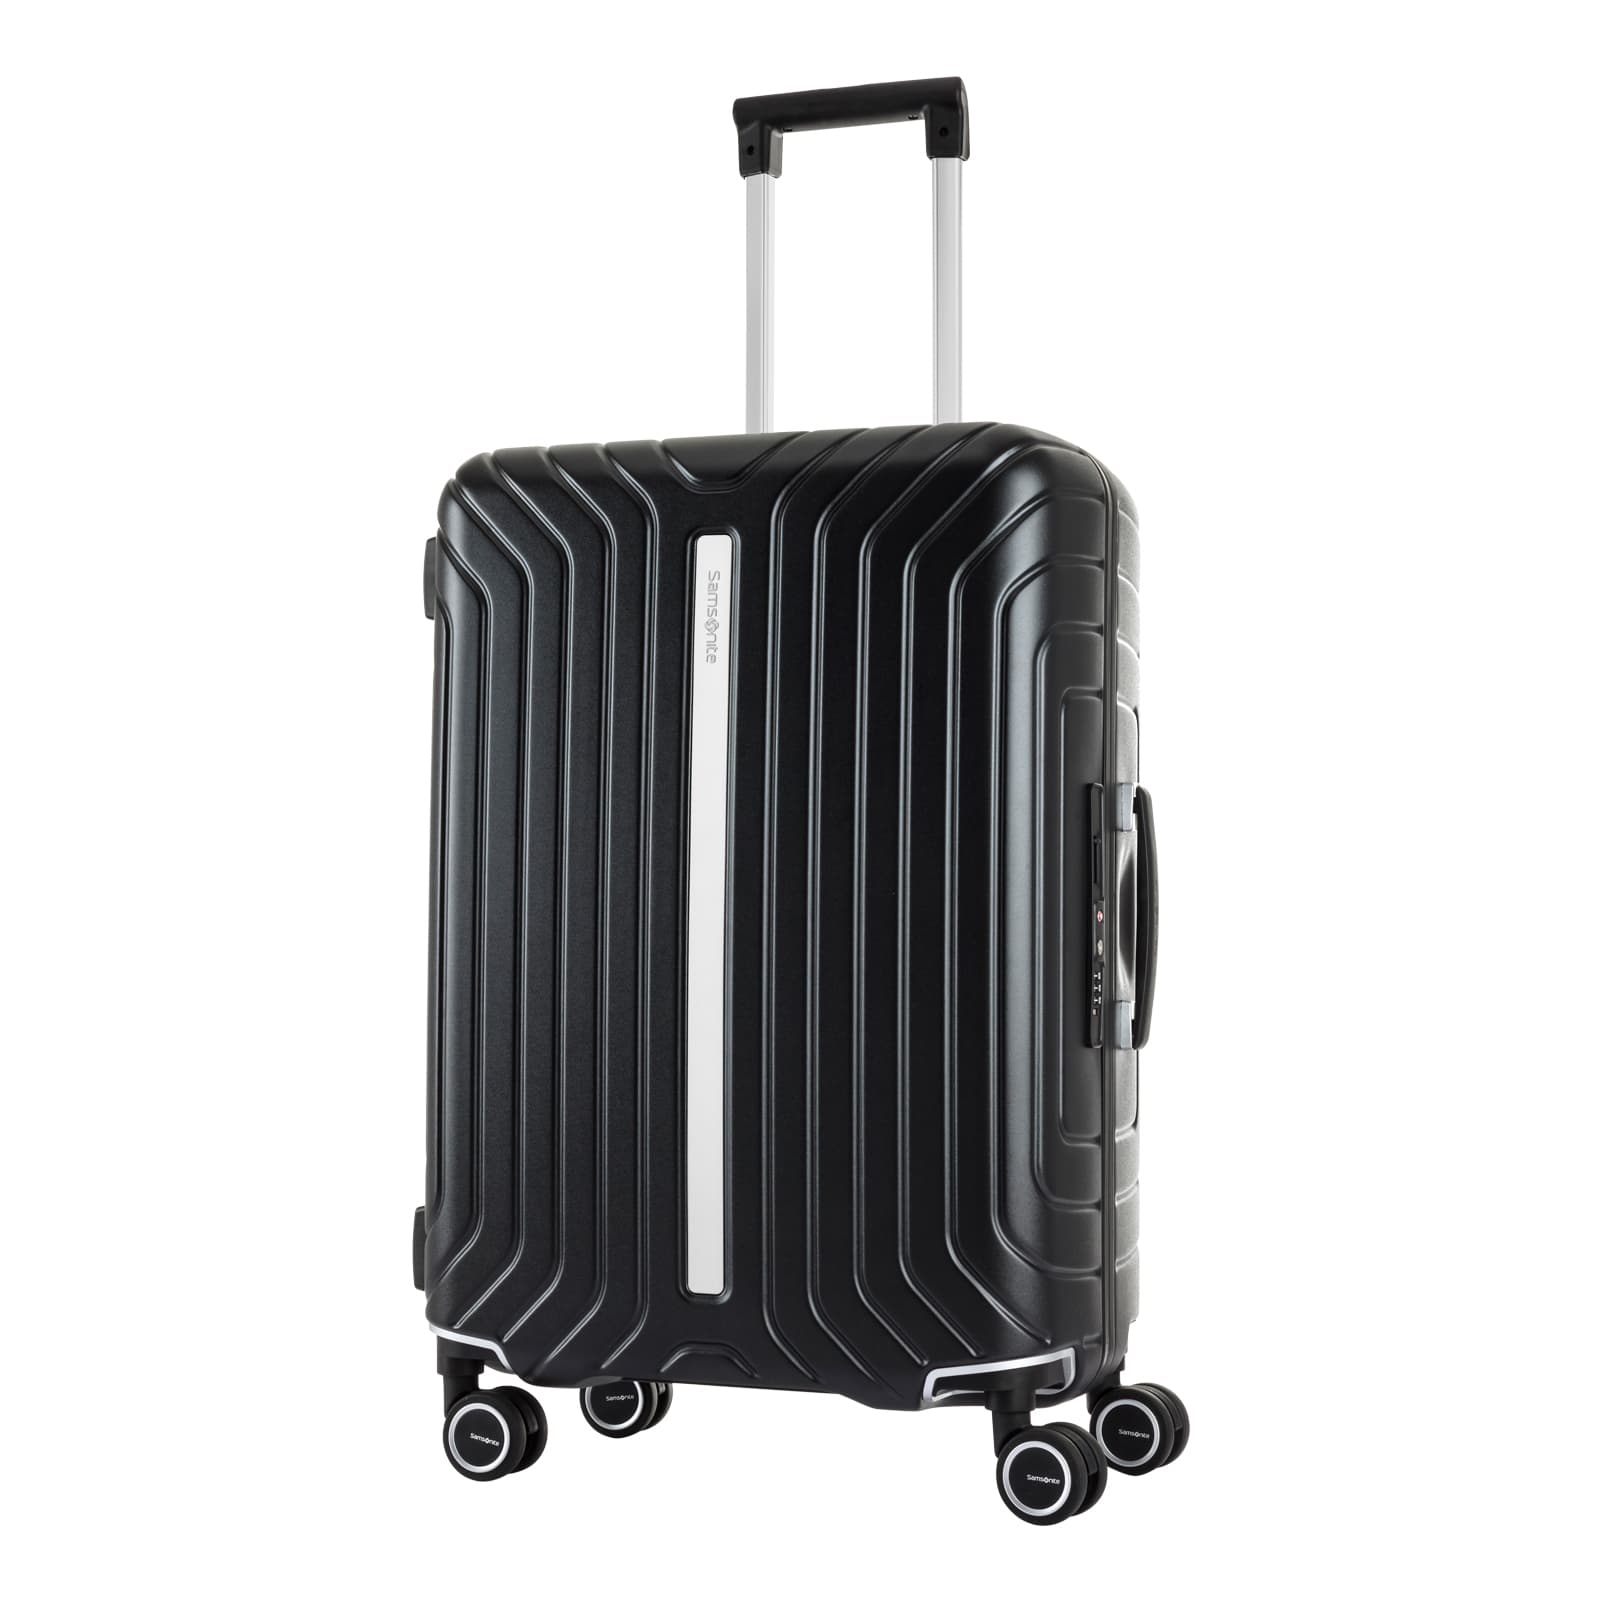 楽天市場】公式 サムソナイト Samsonite スーツケース Mサイズ